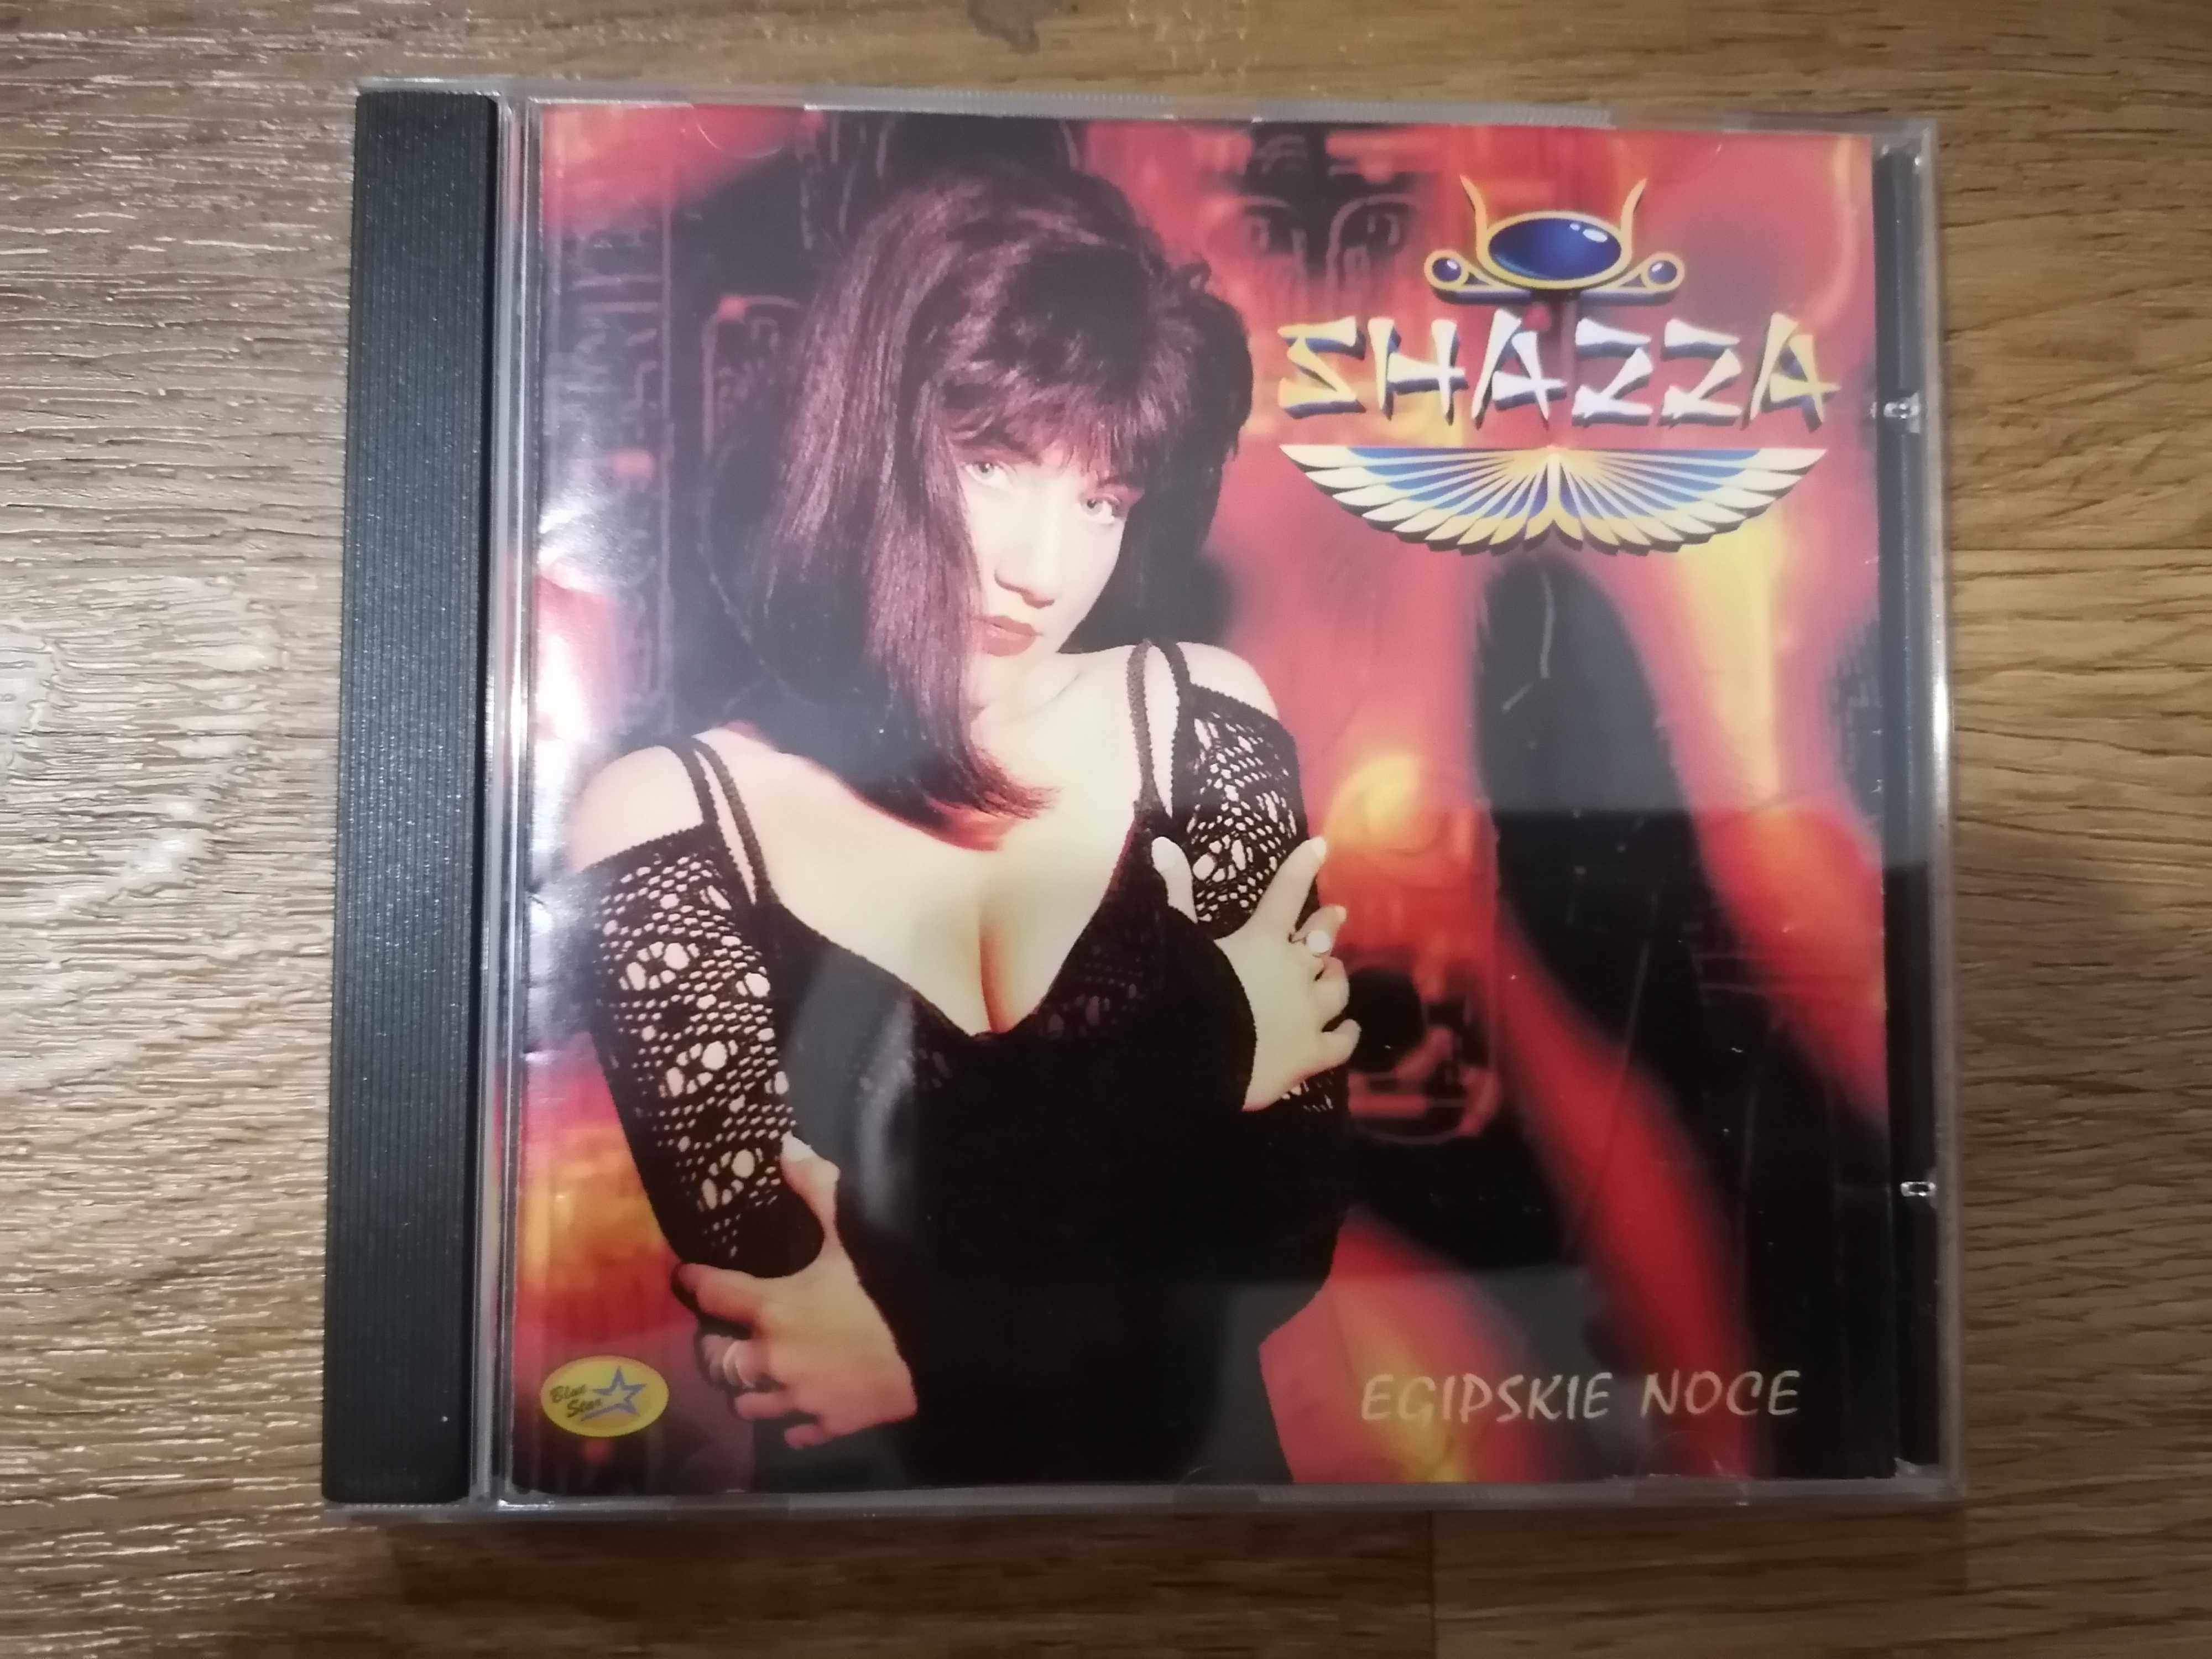 Płyta cd Shazza egipskie noce